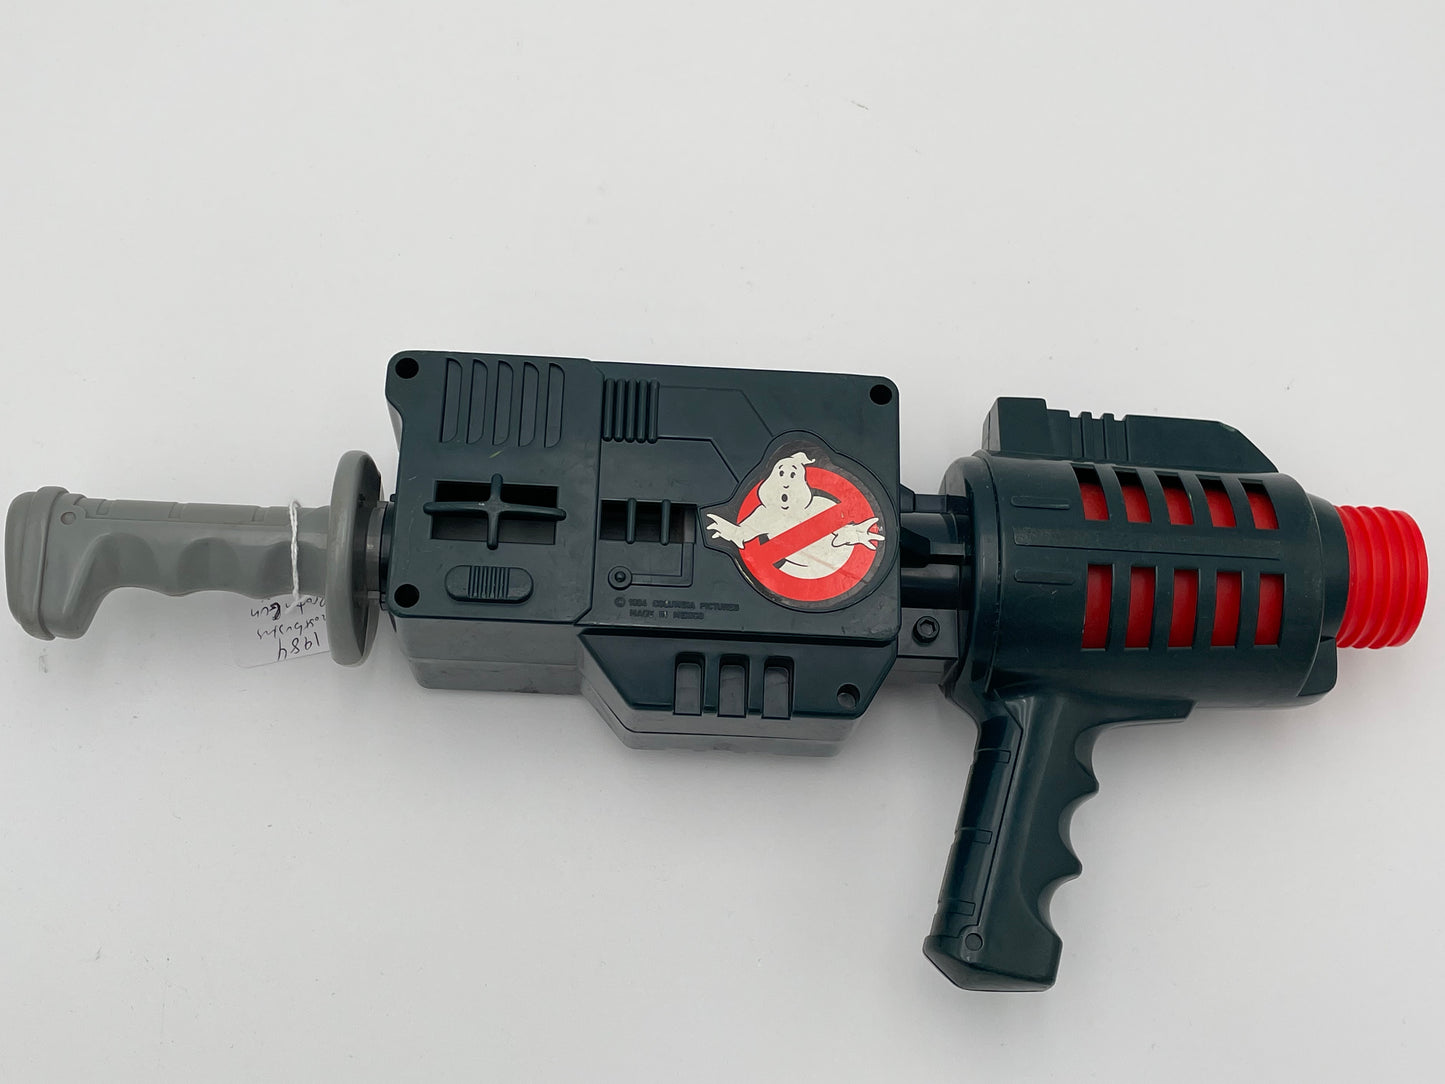 Ghostbusters - Proton Gun - 1984 #102604